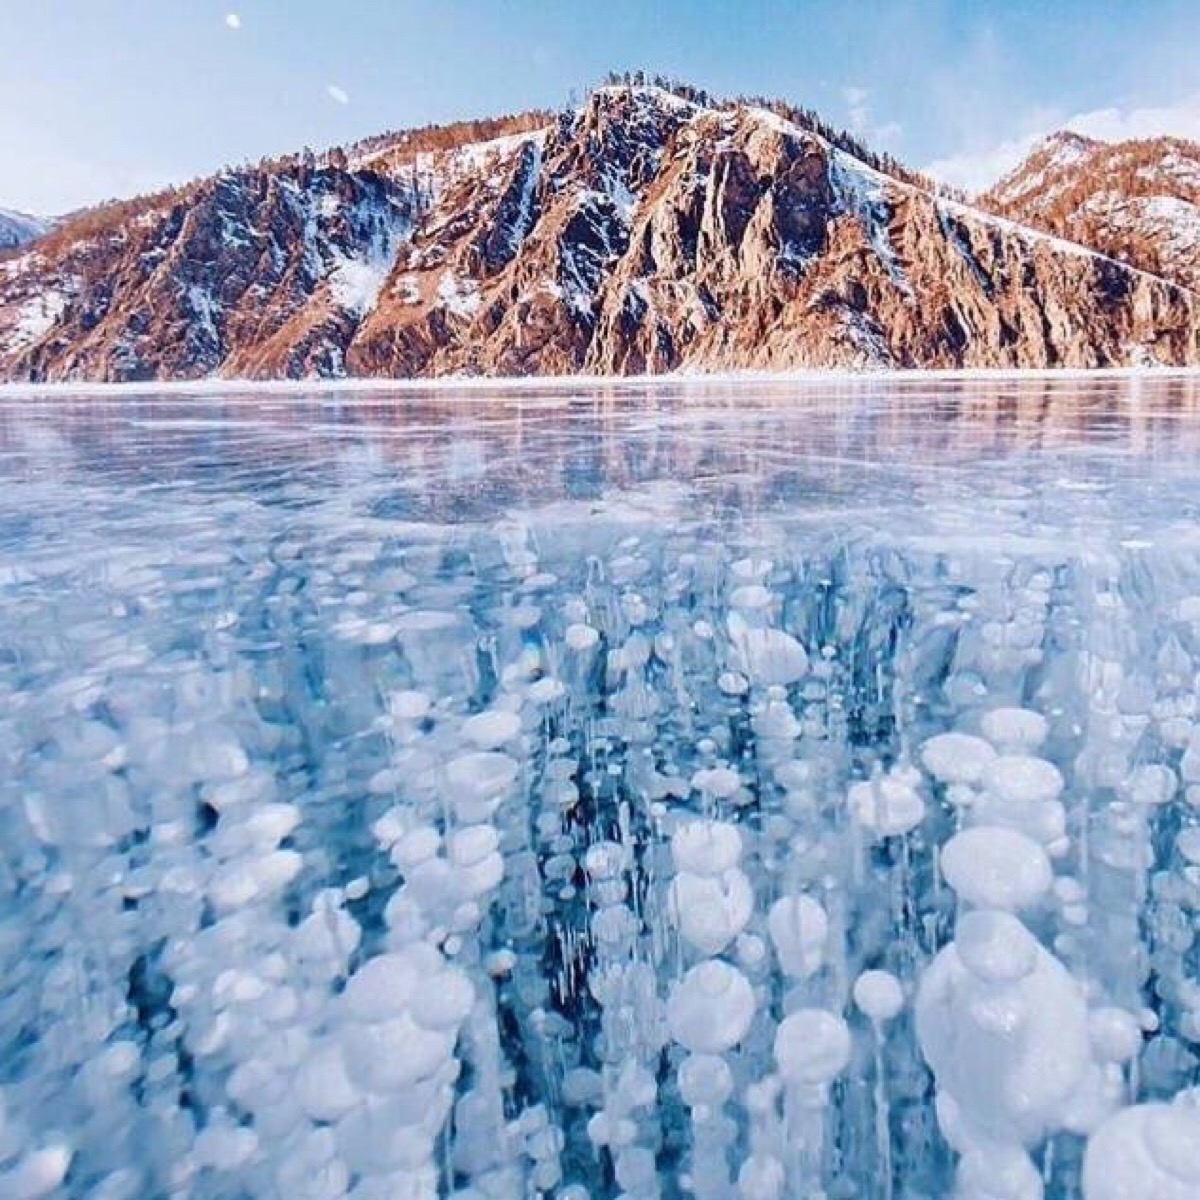 冰冻的贝加尔湖风景摄影冬天冰冻蓝色